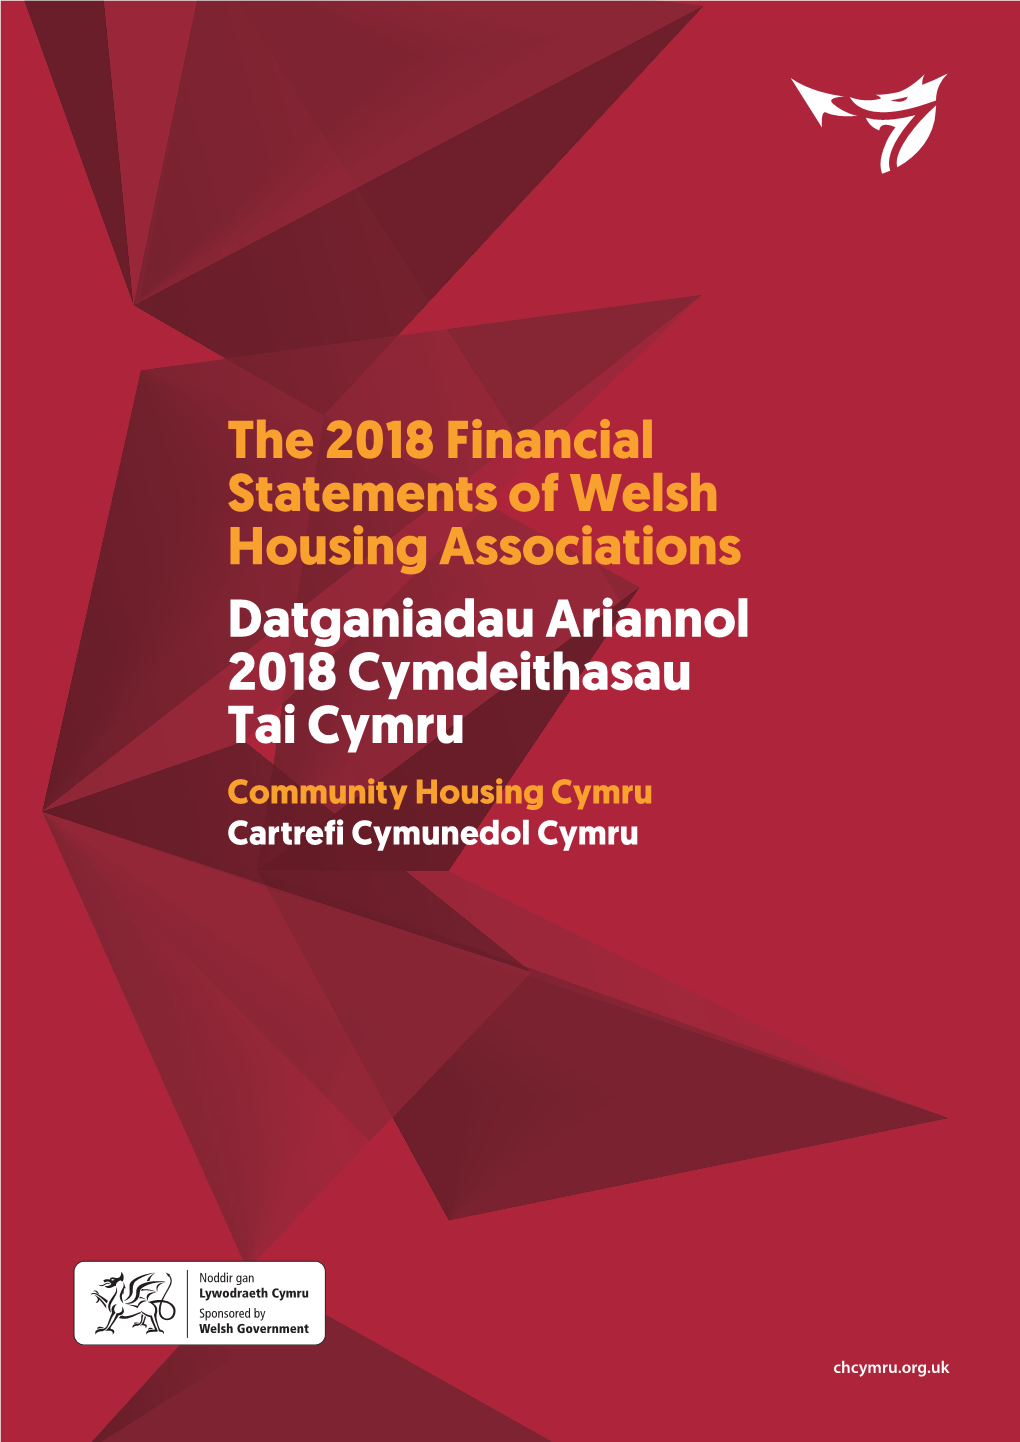 The 2018 Financial Statements of Welsh Housing Associations Datganiadau Ariannol 2018 Cymdeithasau Tai Cymru Community Housing Cymru Cartrefi Cymunedol Cymru